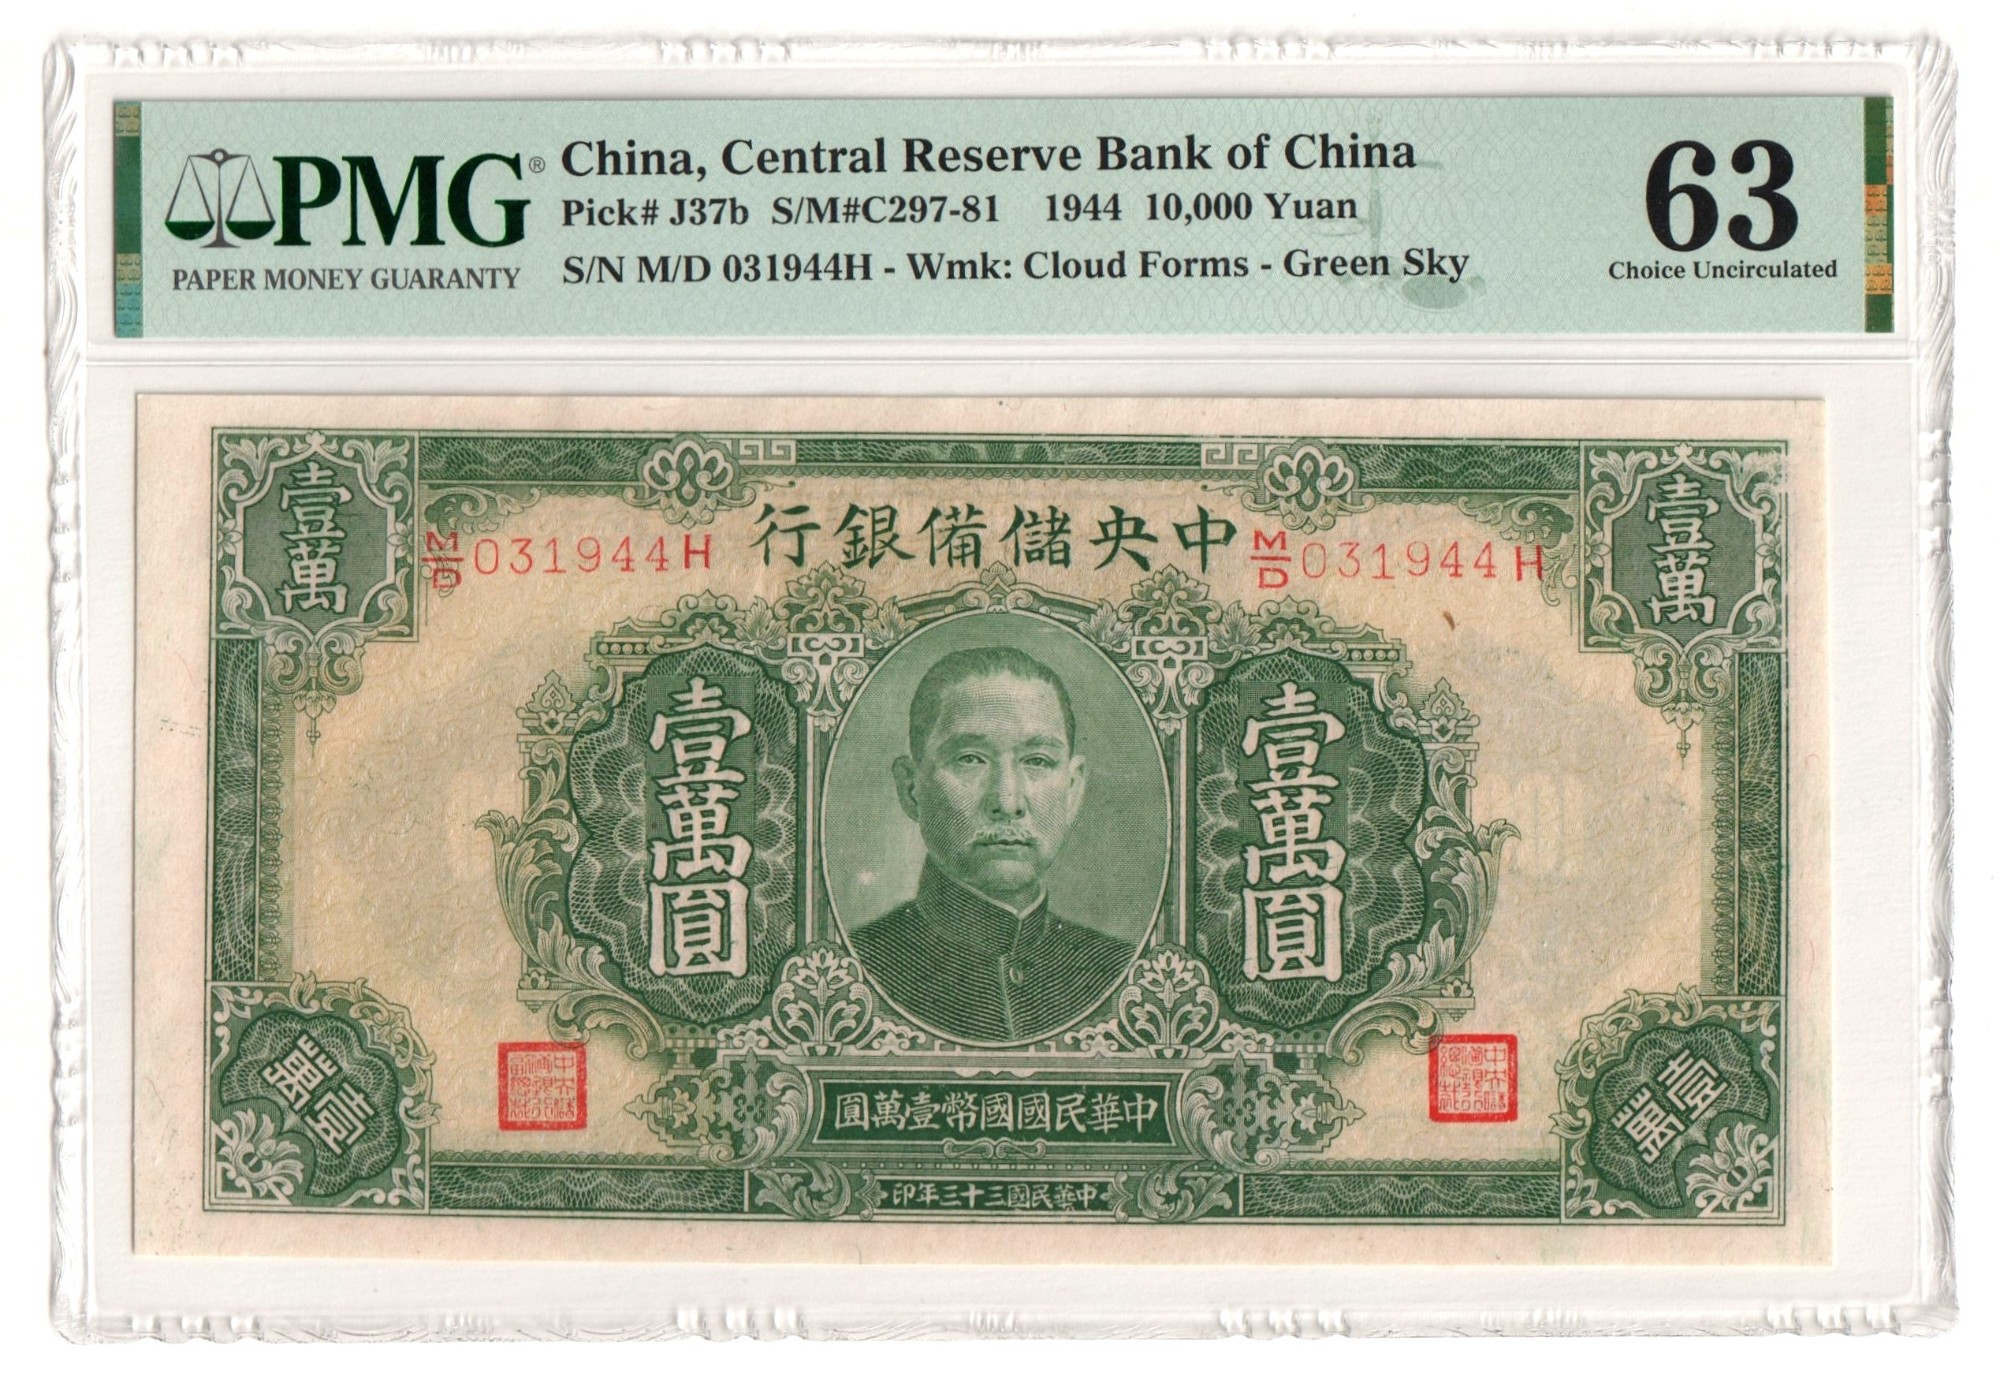 Китайская купюра 1000. Китайская купюра 10 юаней. Банкнота Китая 10 юаней 1944 года. Китайские банкноты со Сталиным.